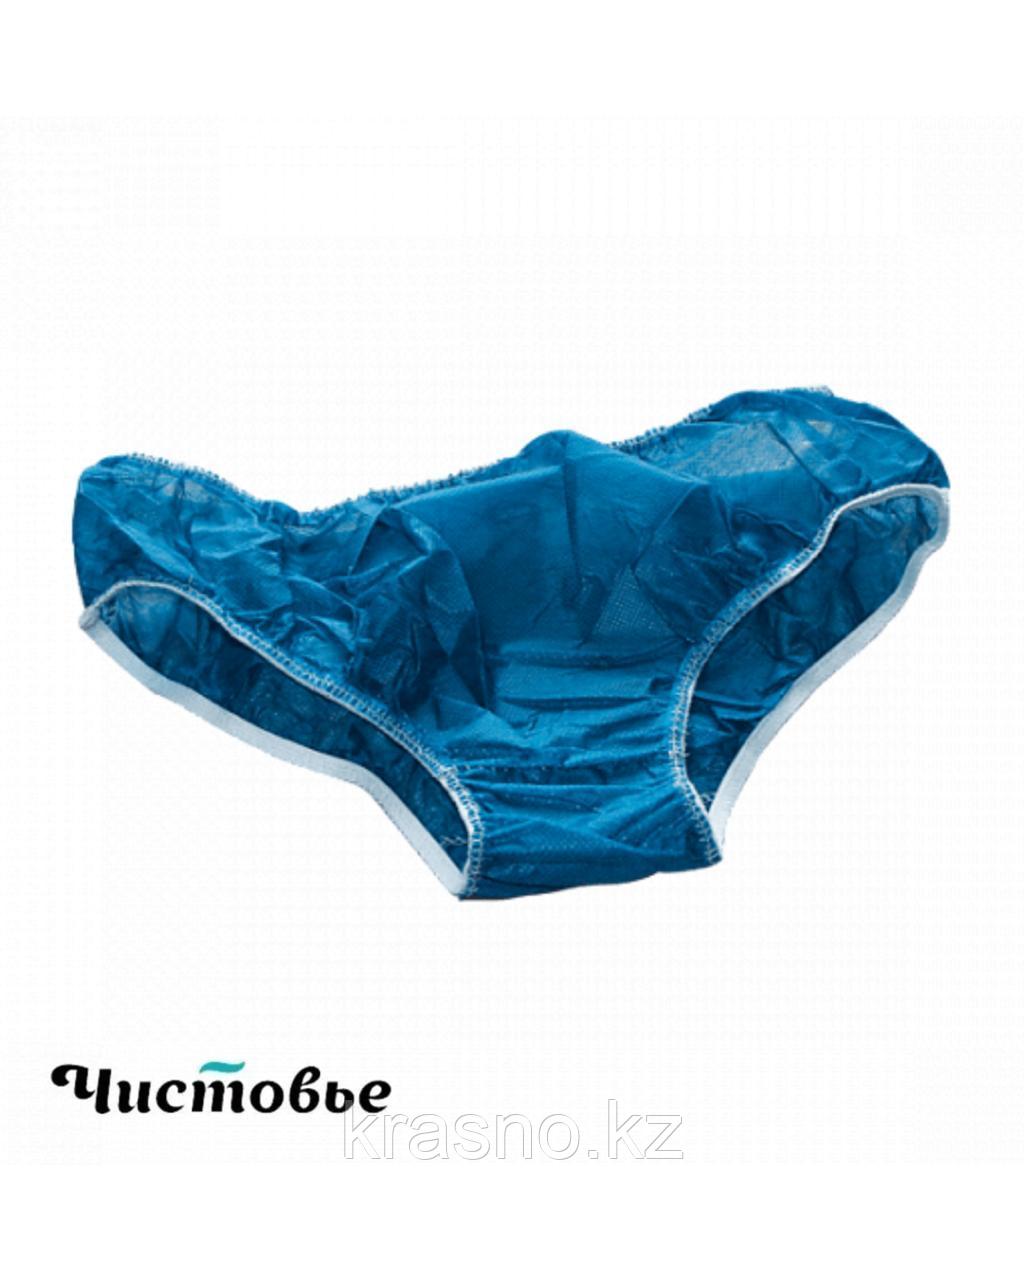 Трусы 10шт плавки классика синие спанбонд размер 50-52 Чистовье